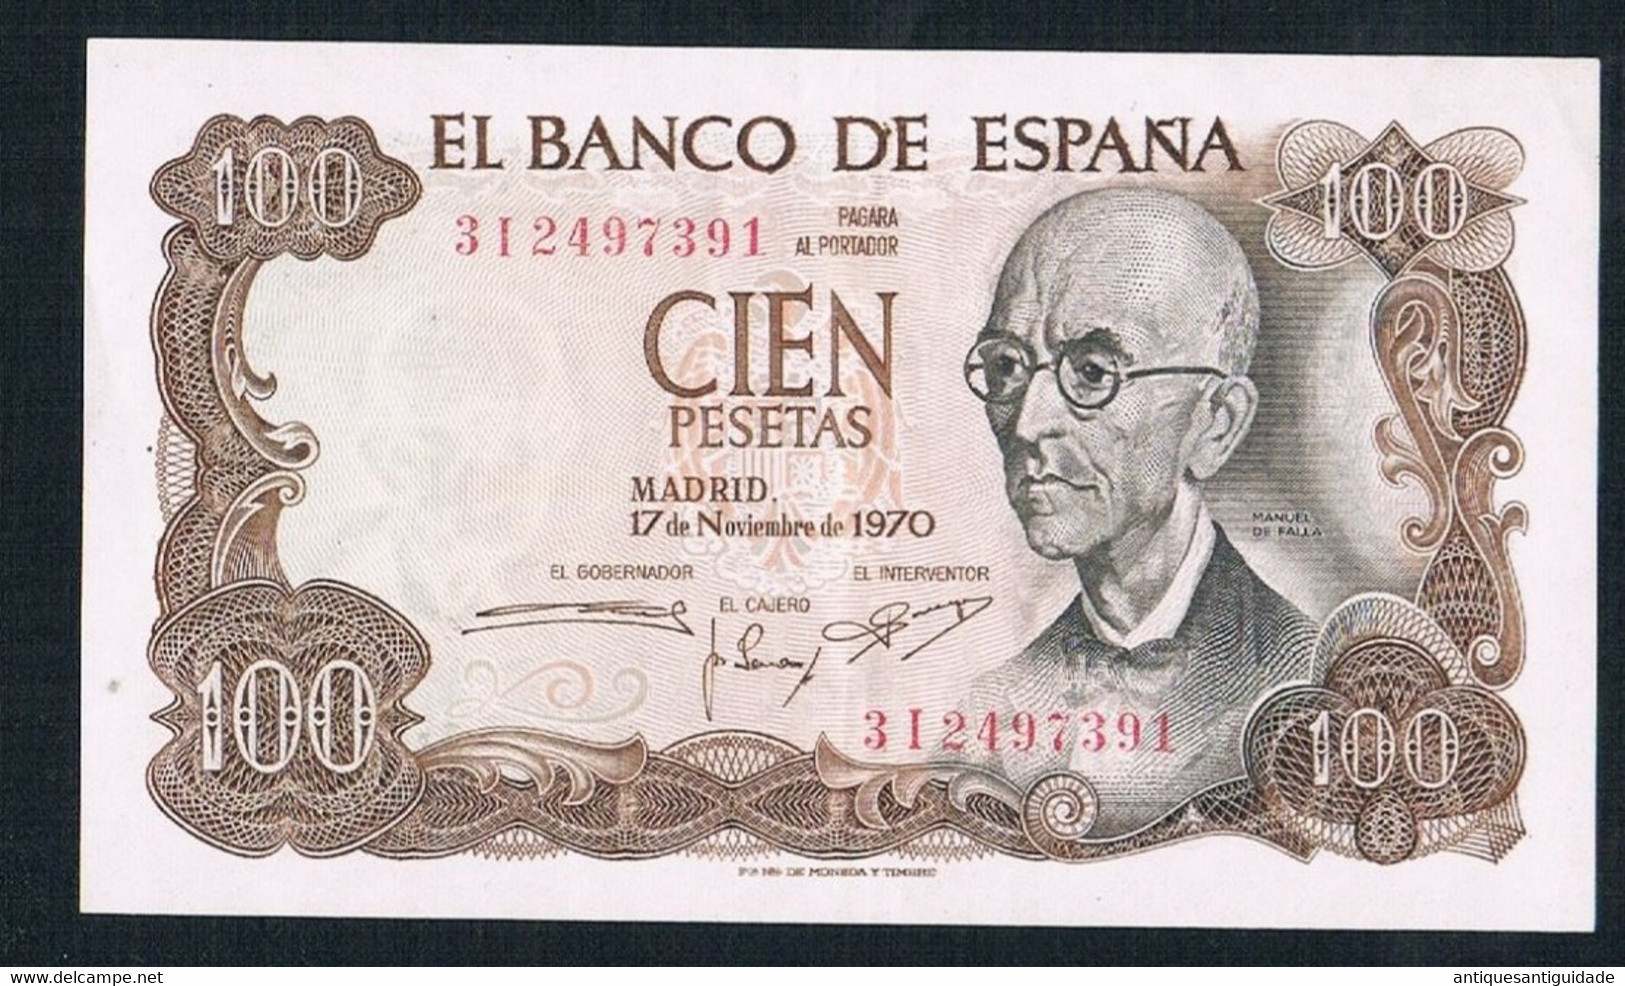 1970 SPAIN Banknote Cien 100 PESETAS UNC Very Fine - 100 Pesetas